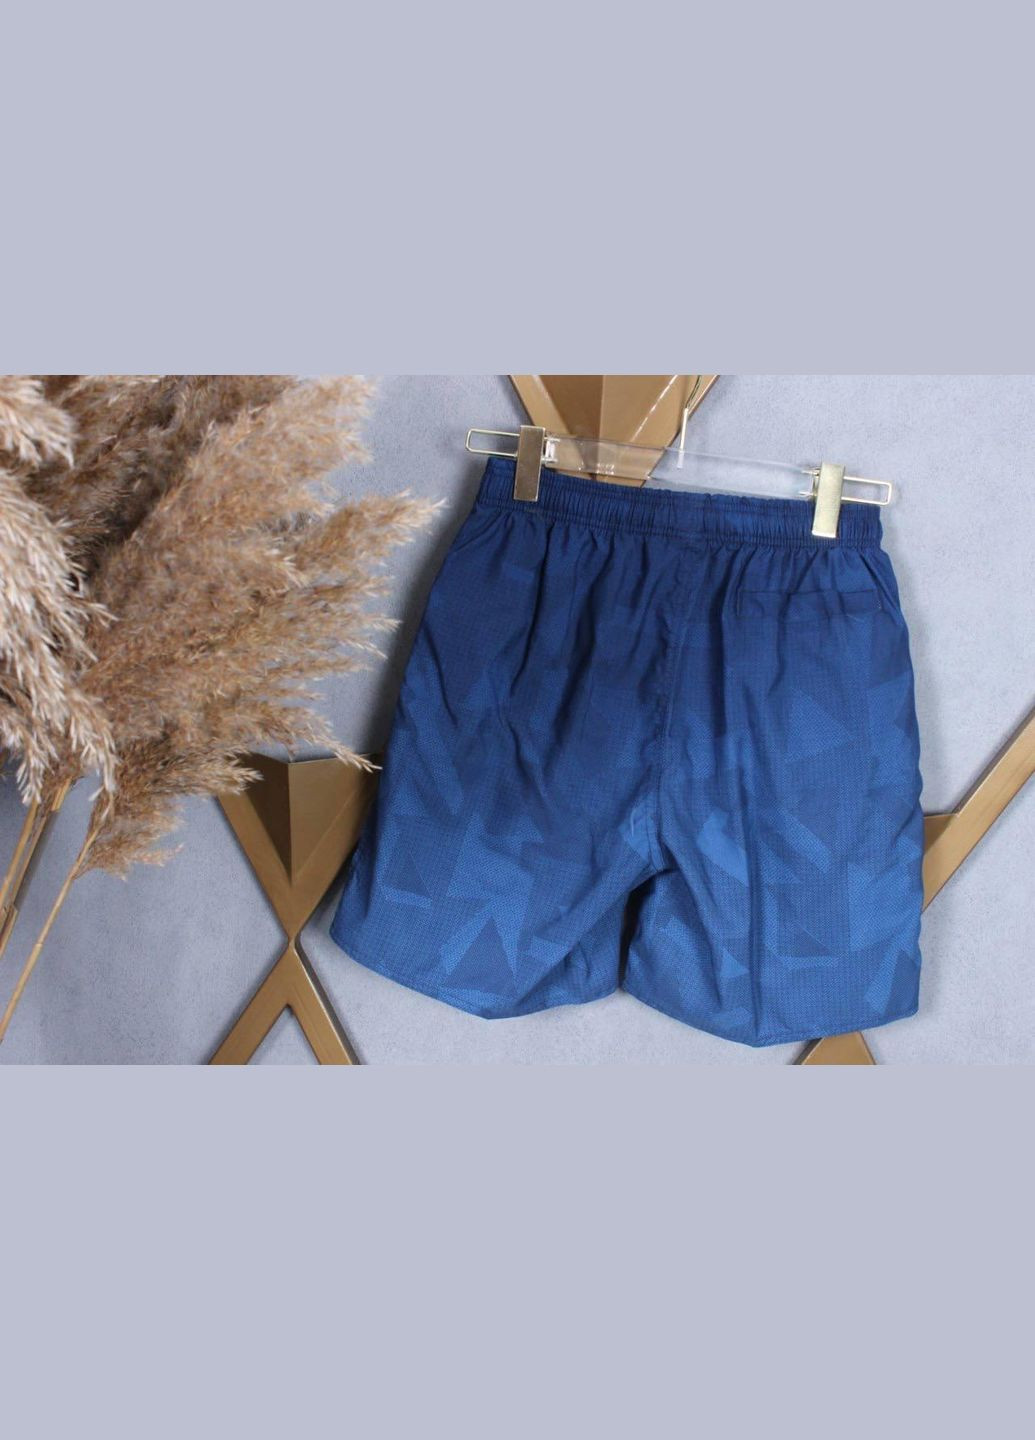 Фабричні шорти для чоловіків нова колекція D-2385 Синій, L/52 Sofia (268025155)